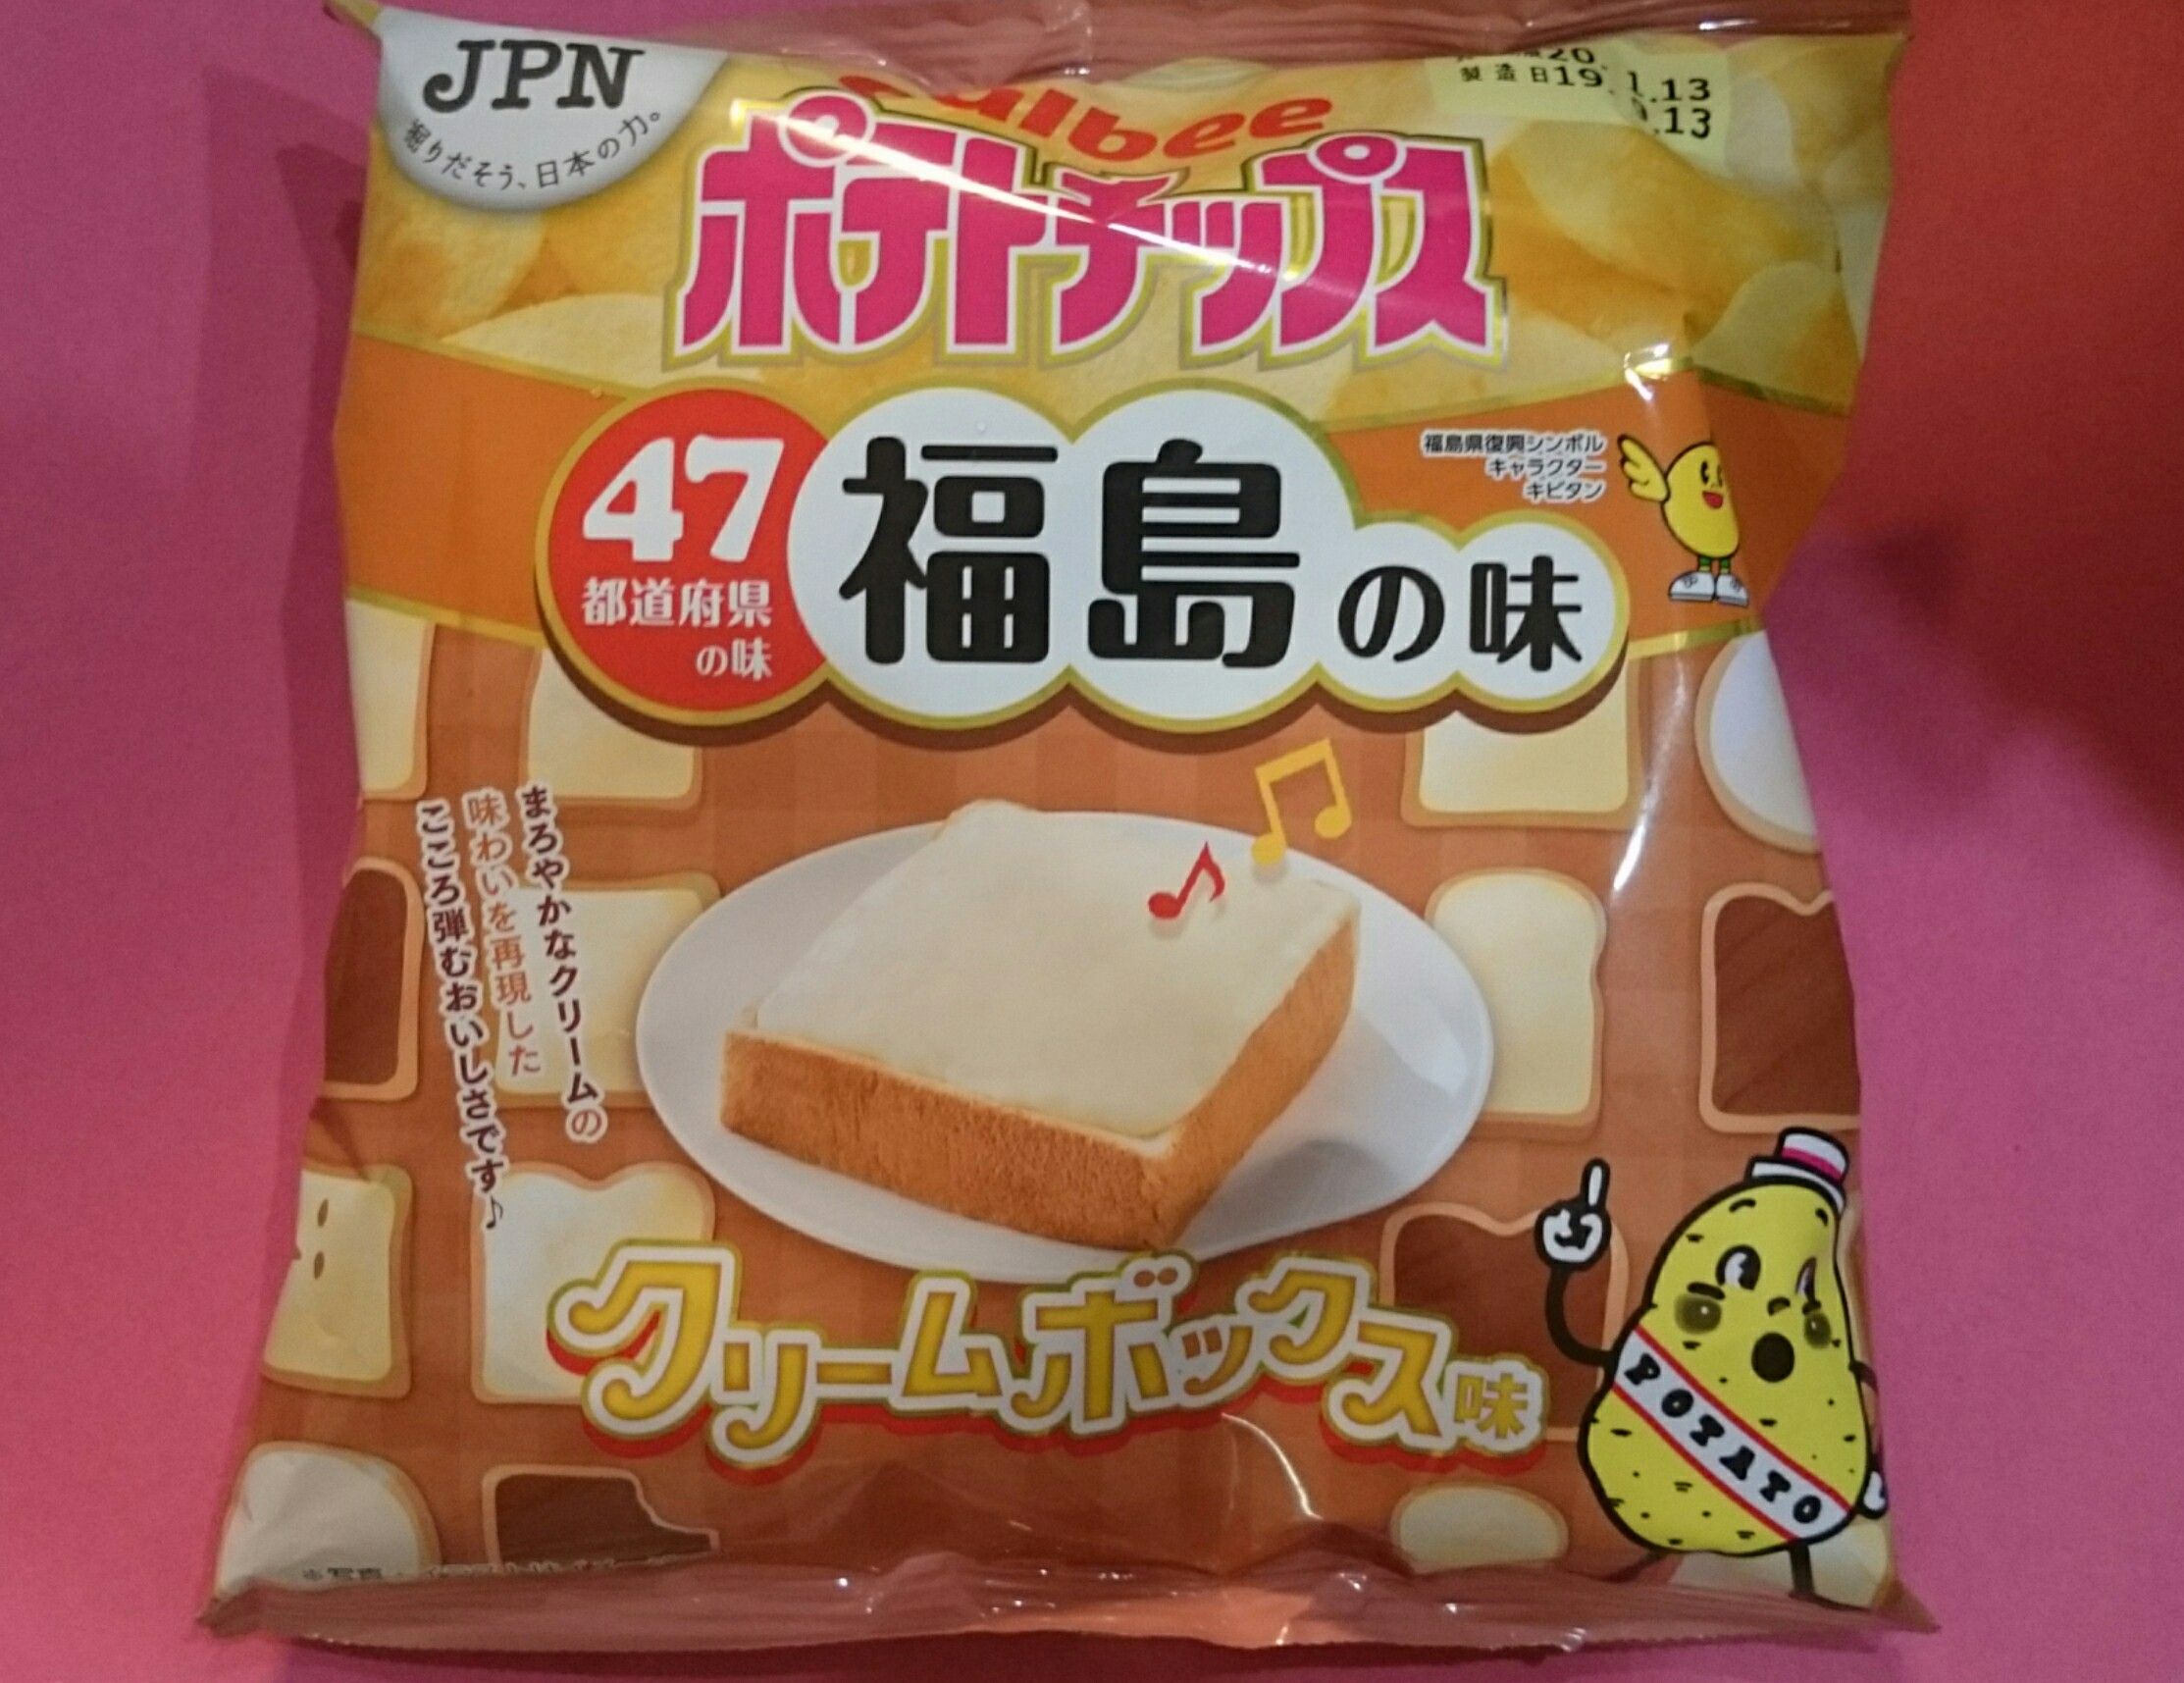 カルビーポテトチップスのクリームボックス味 福島の味 を買って食べました 感想 コストコenjoy ブログ 楽天ブログ